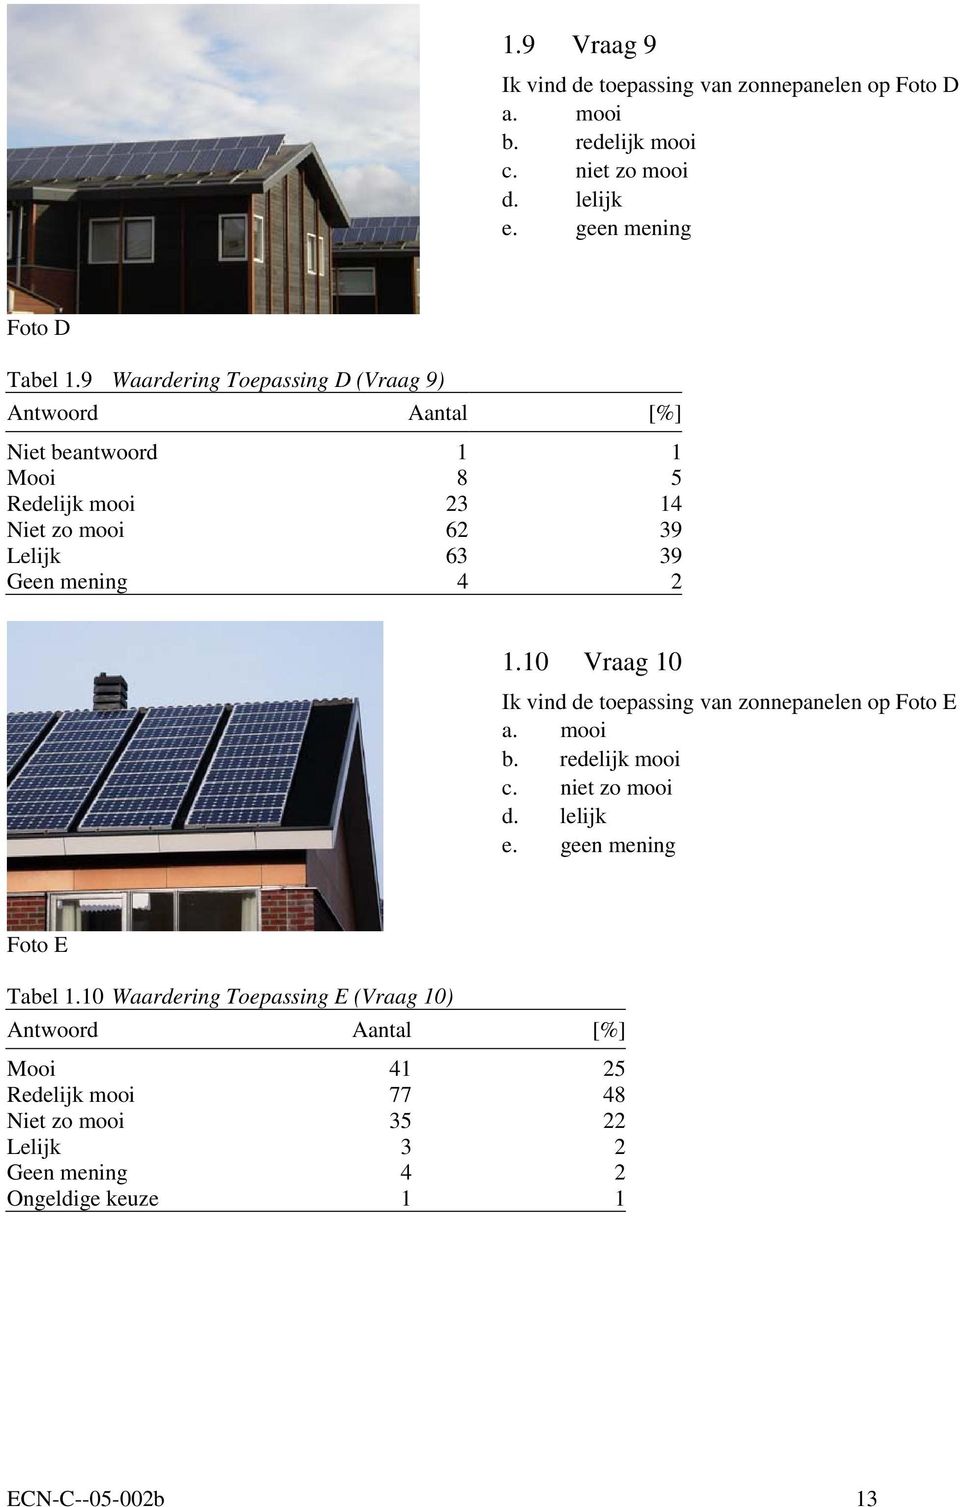 1.10 Vraag 10 Ik vind de toepassing van zonnepanelen op Foto E a. mooi b. redelijk mooi c. niet zo mooi d. lelijk e. geen mening Foto E Tabel 1.